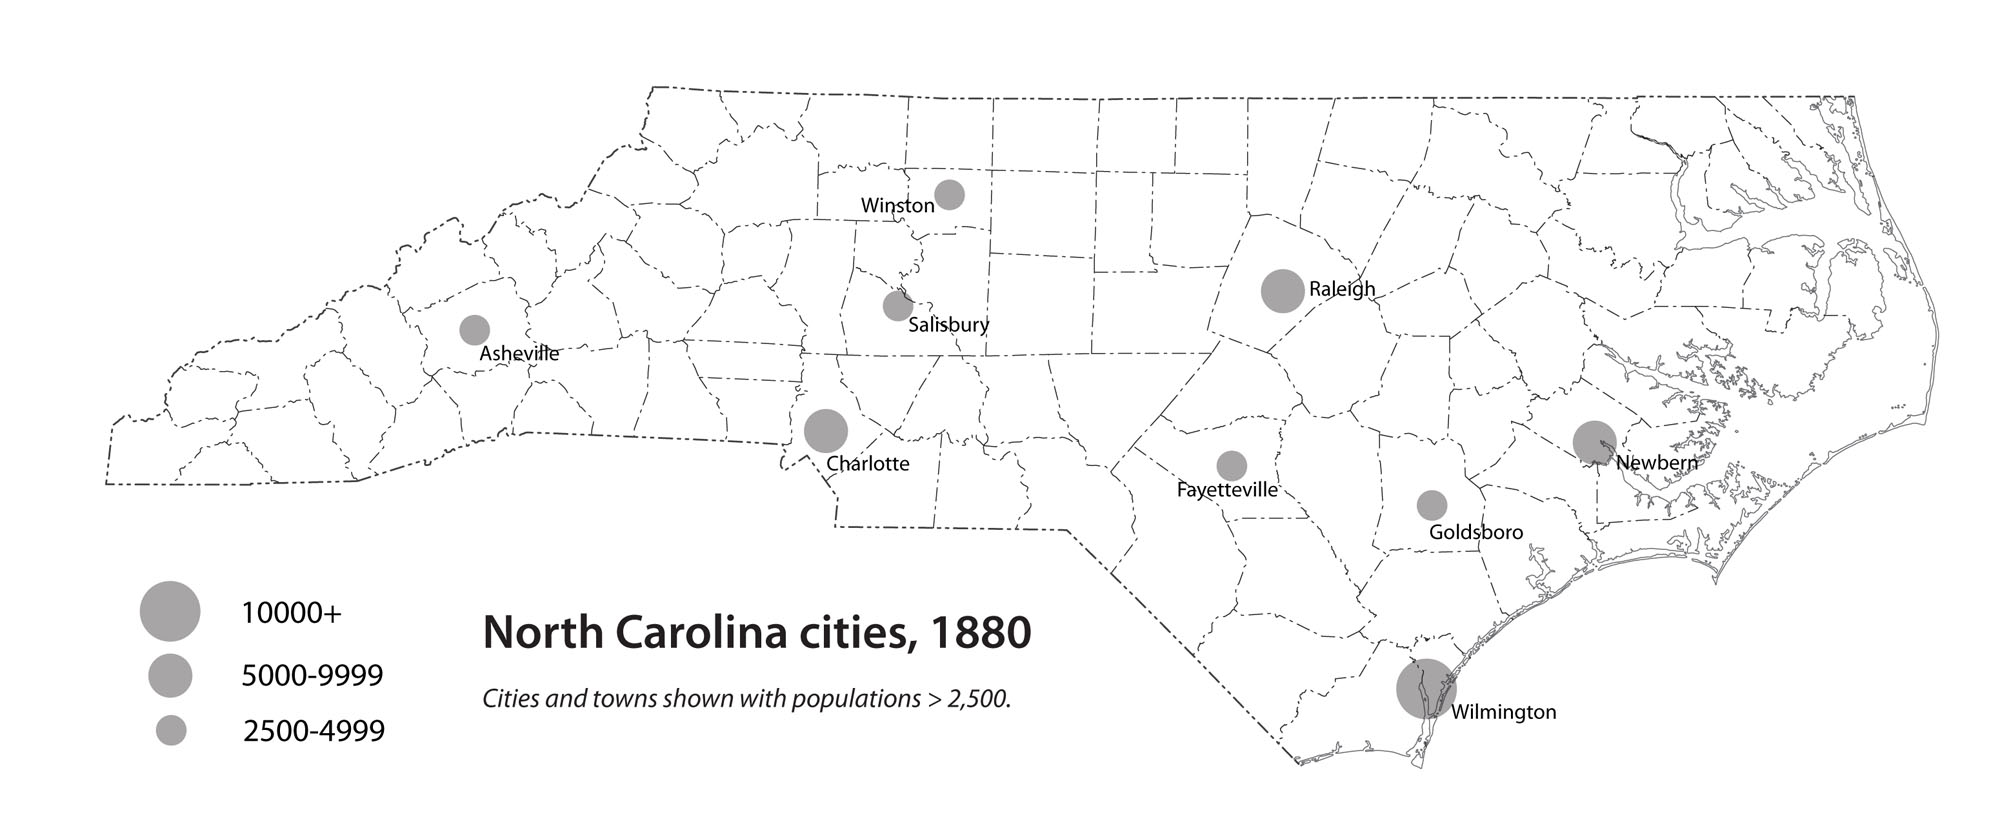 North Carolina cities, 1880